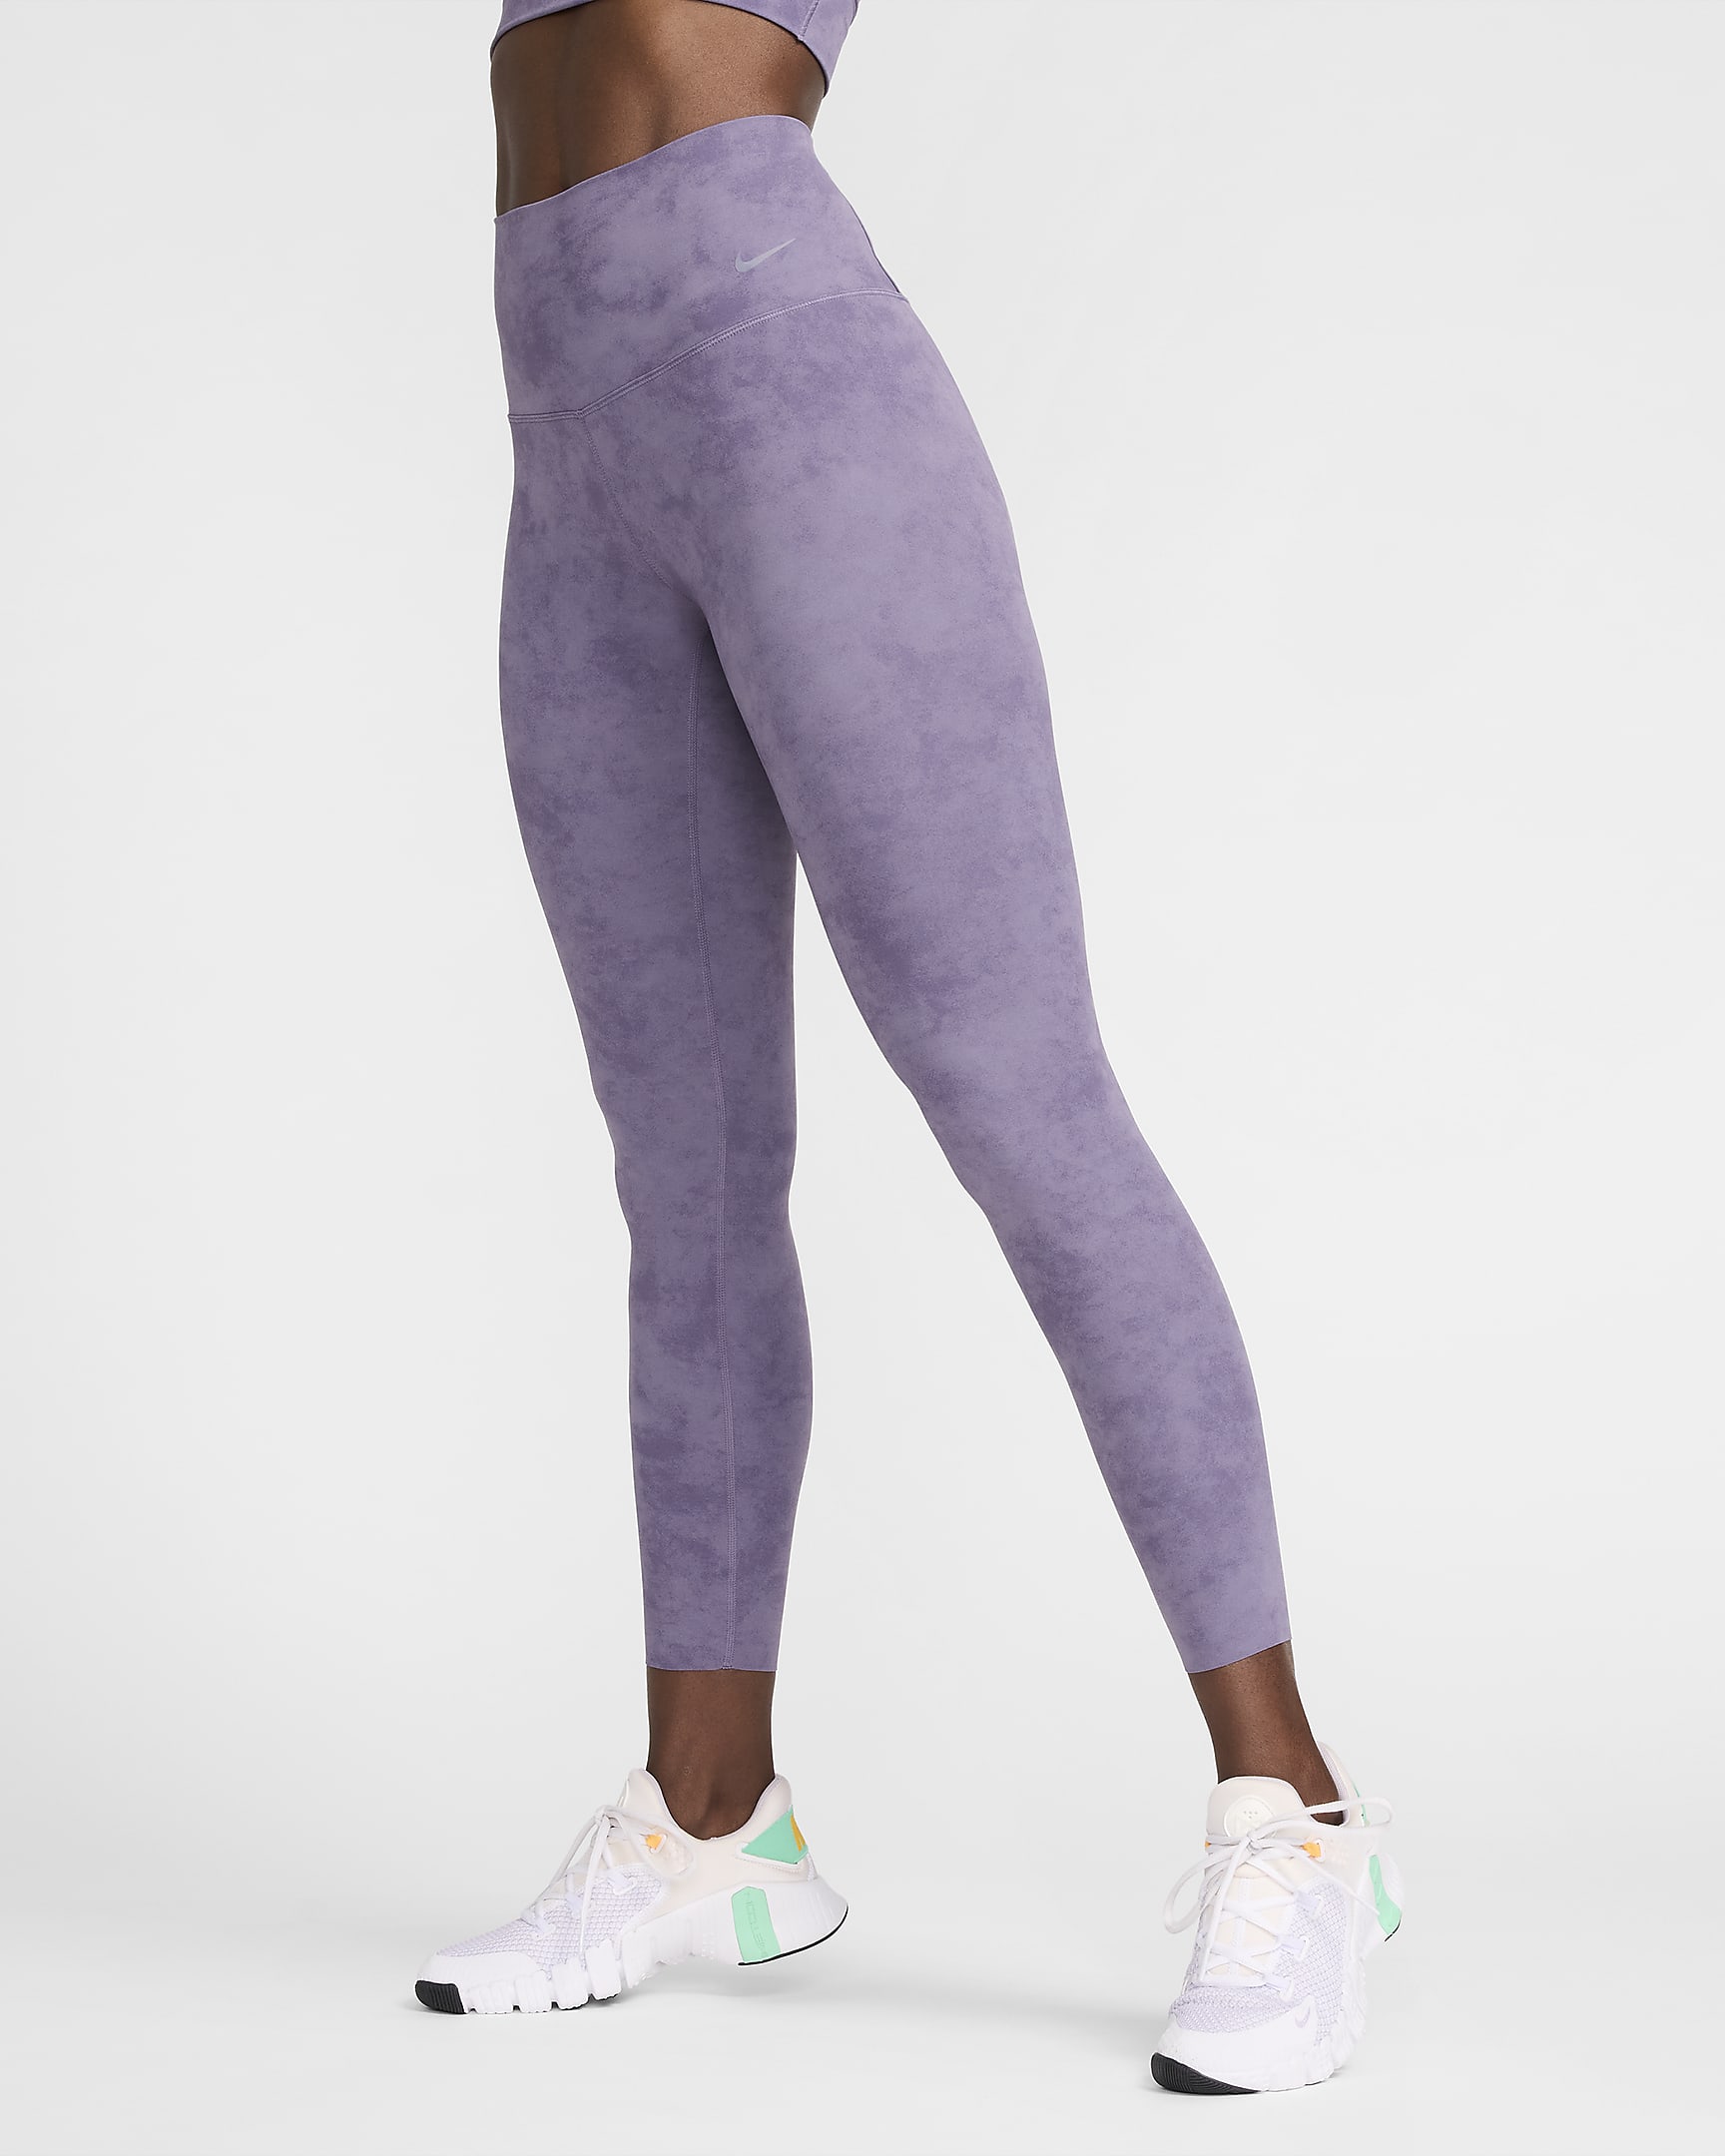 Nike Zenvy Tie-Dye Women's Gentle-Support High-Waisted 7/8 Leggings - Daybreak/Black